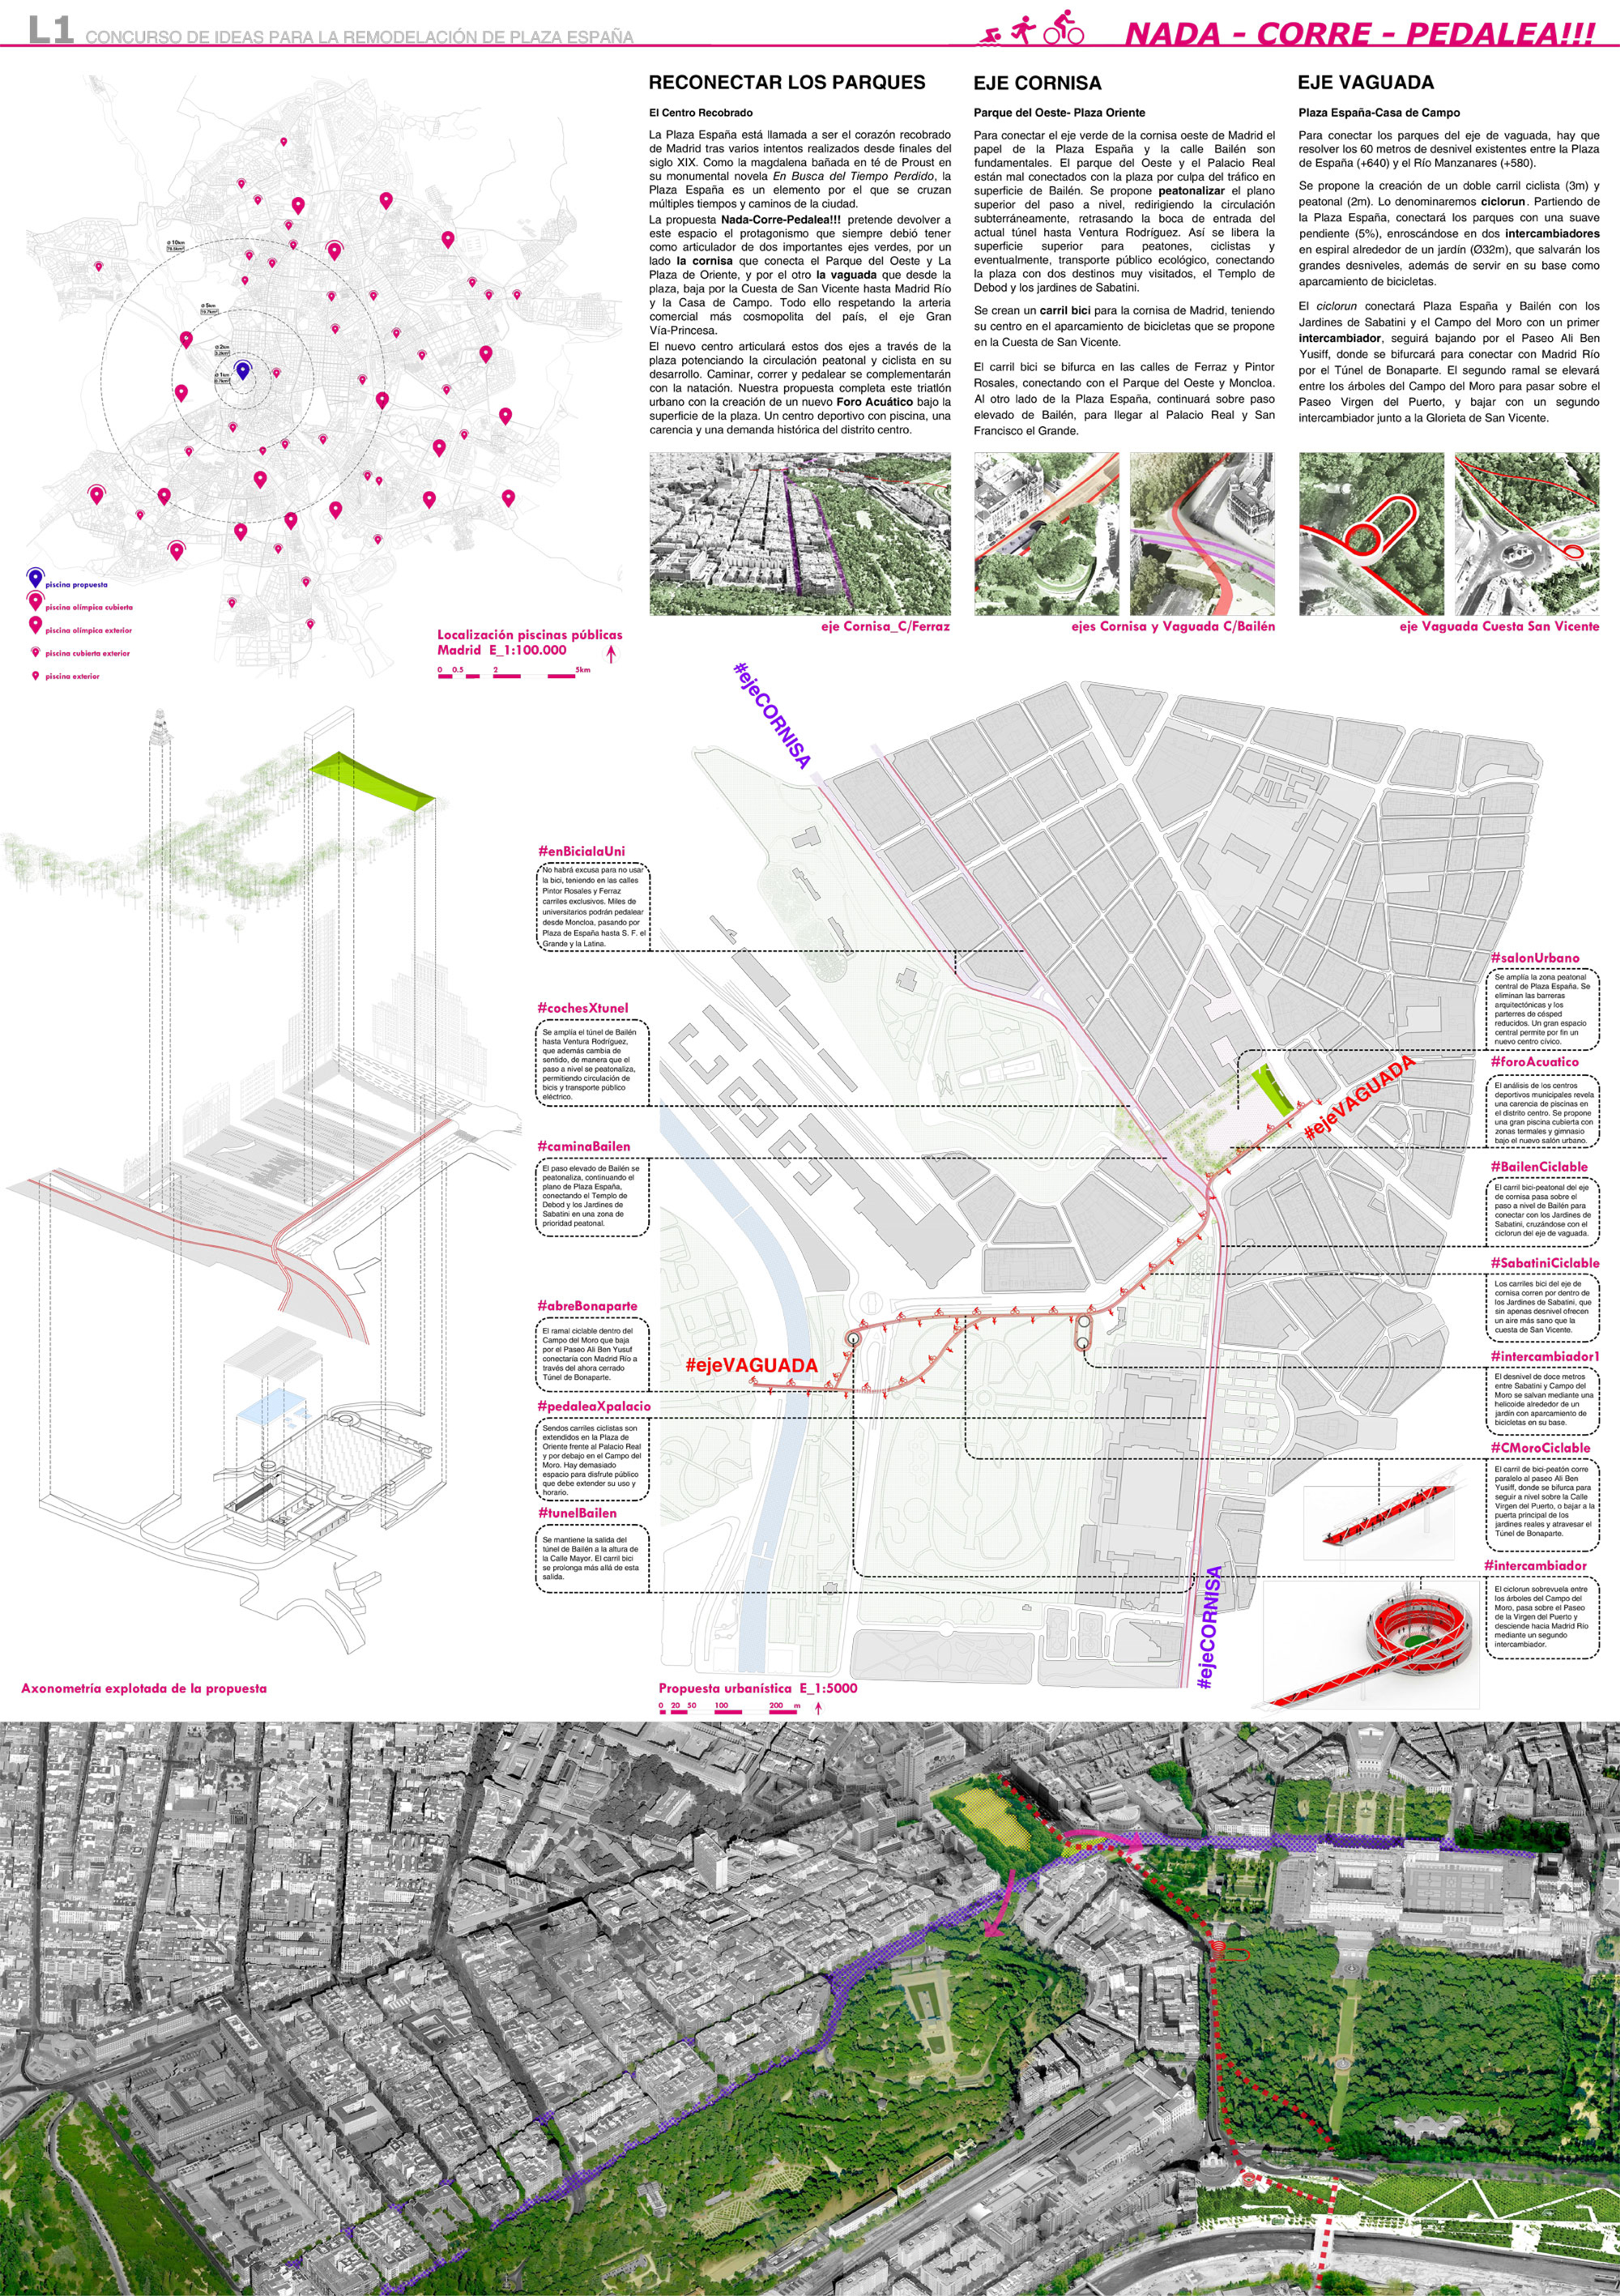 Proyecto 16 para la Remodelación de Plaza España: NADA CORRE PEDALEA